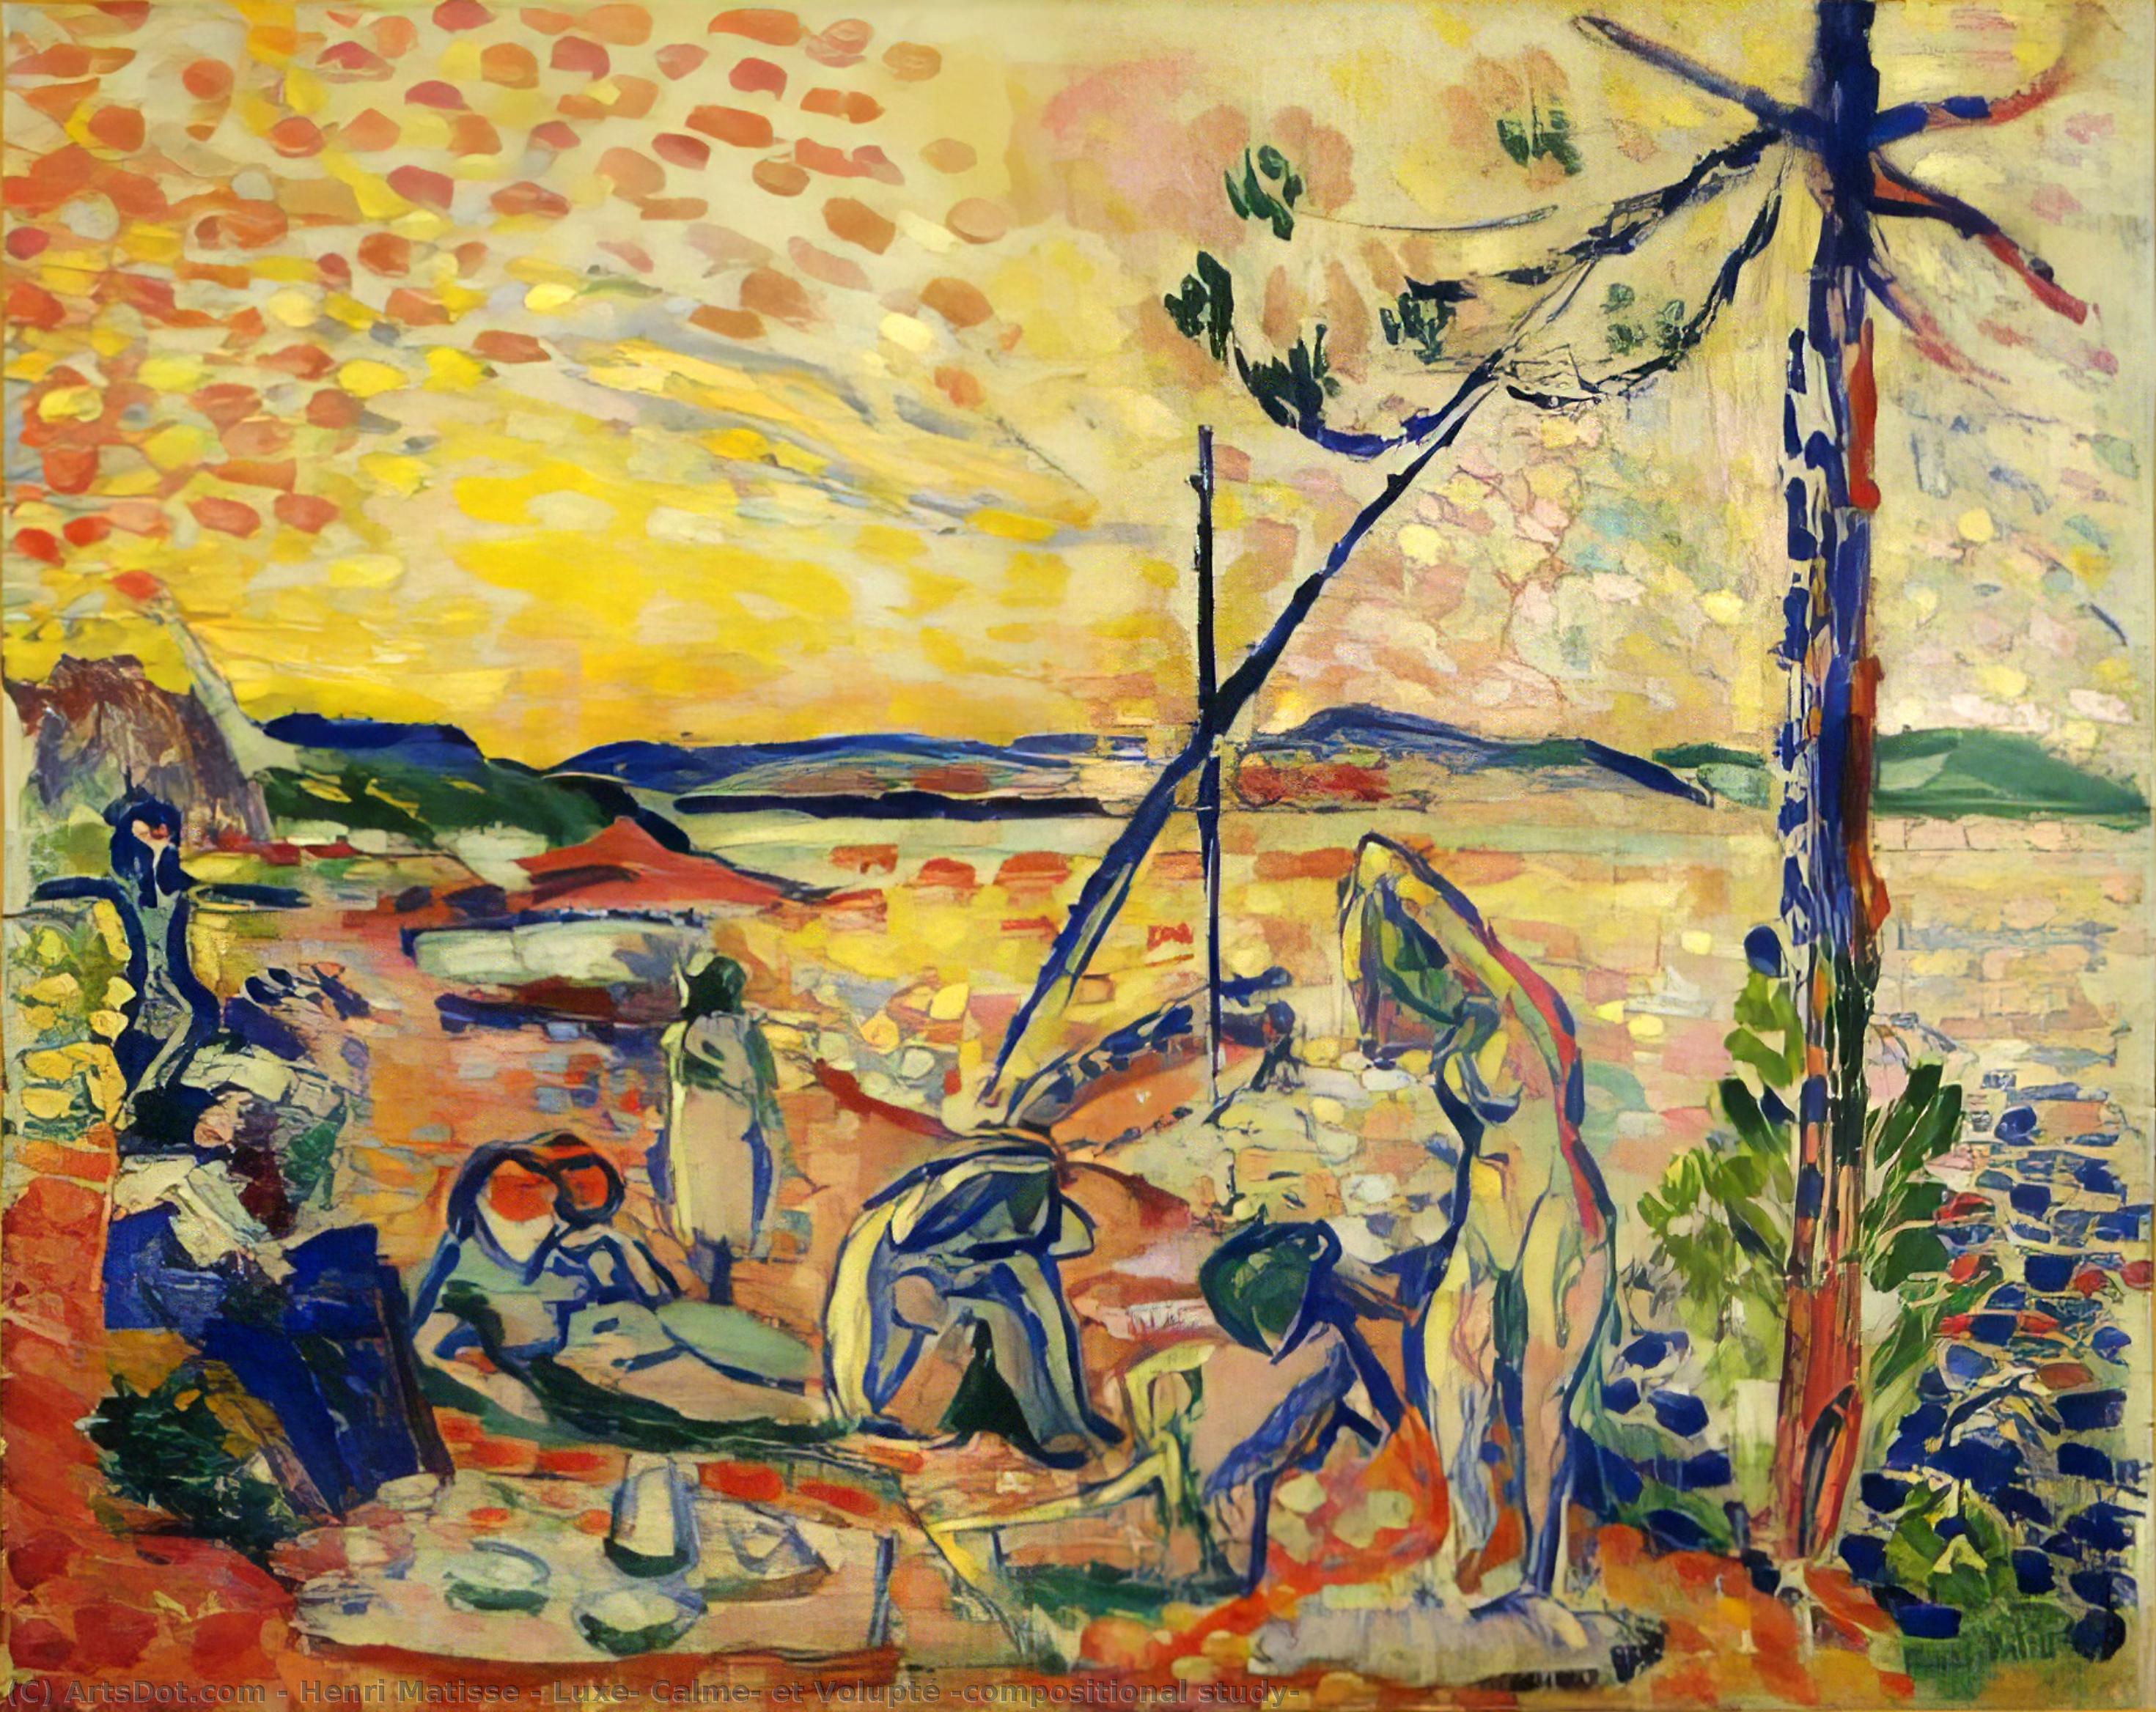 Acheter Reproductions D'art De Musée Luxe, Calme, et Volupté (étude comparative), 1904 de Henri Matisse (Inspiré par) (1869-1954, France) | ArtsDot.com